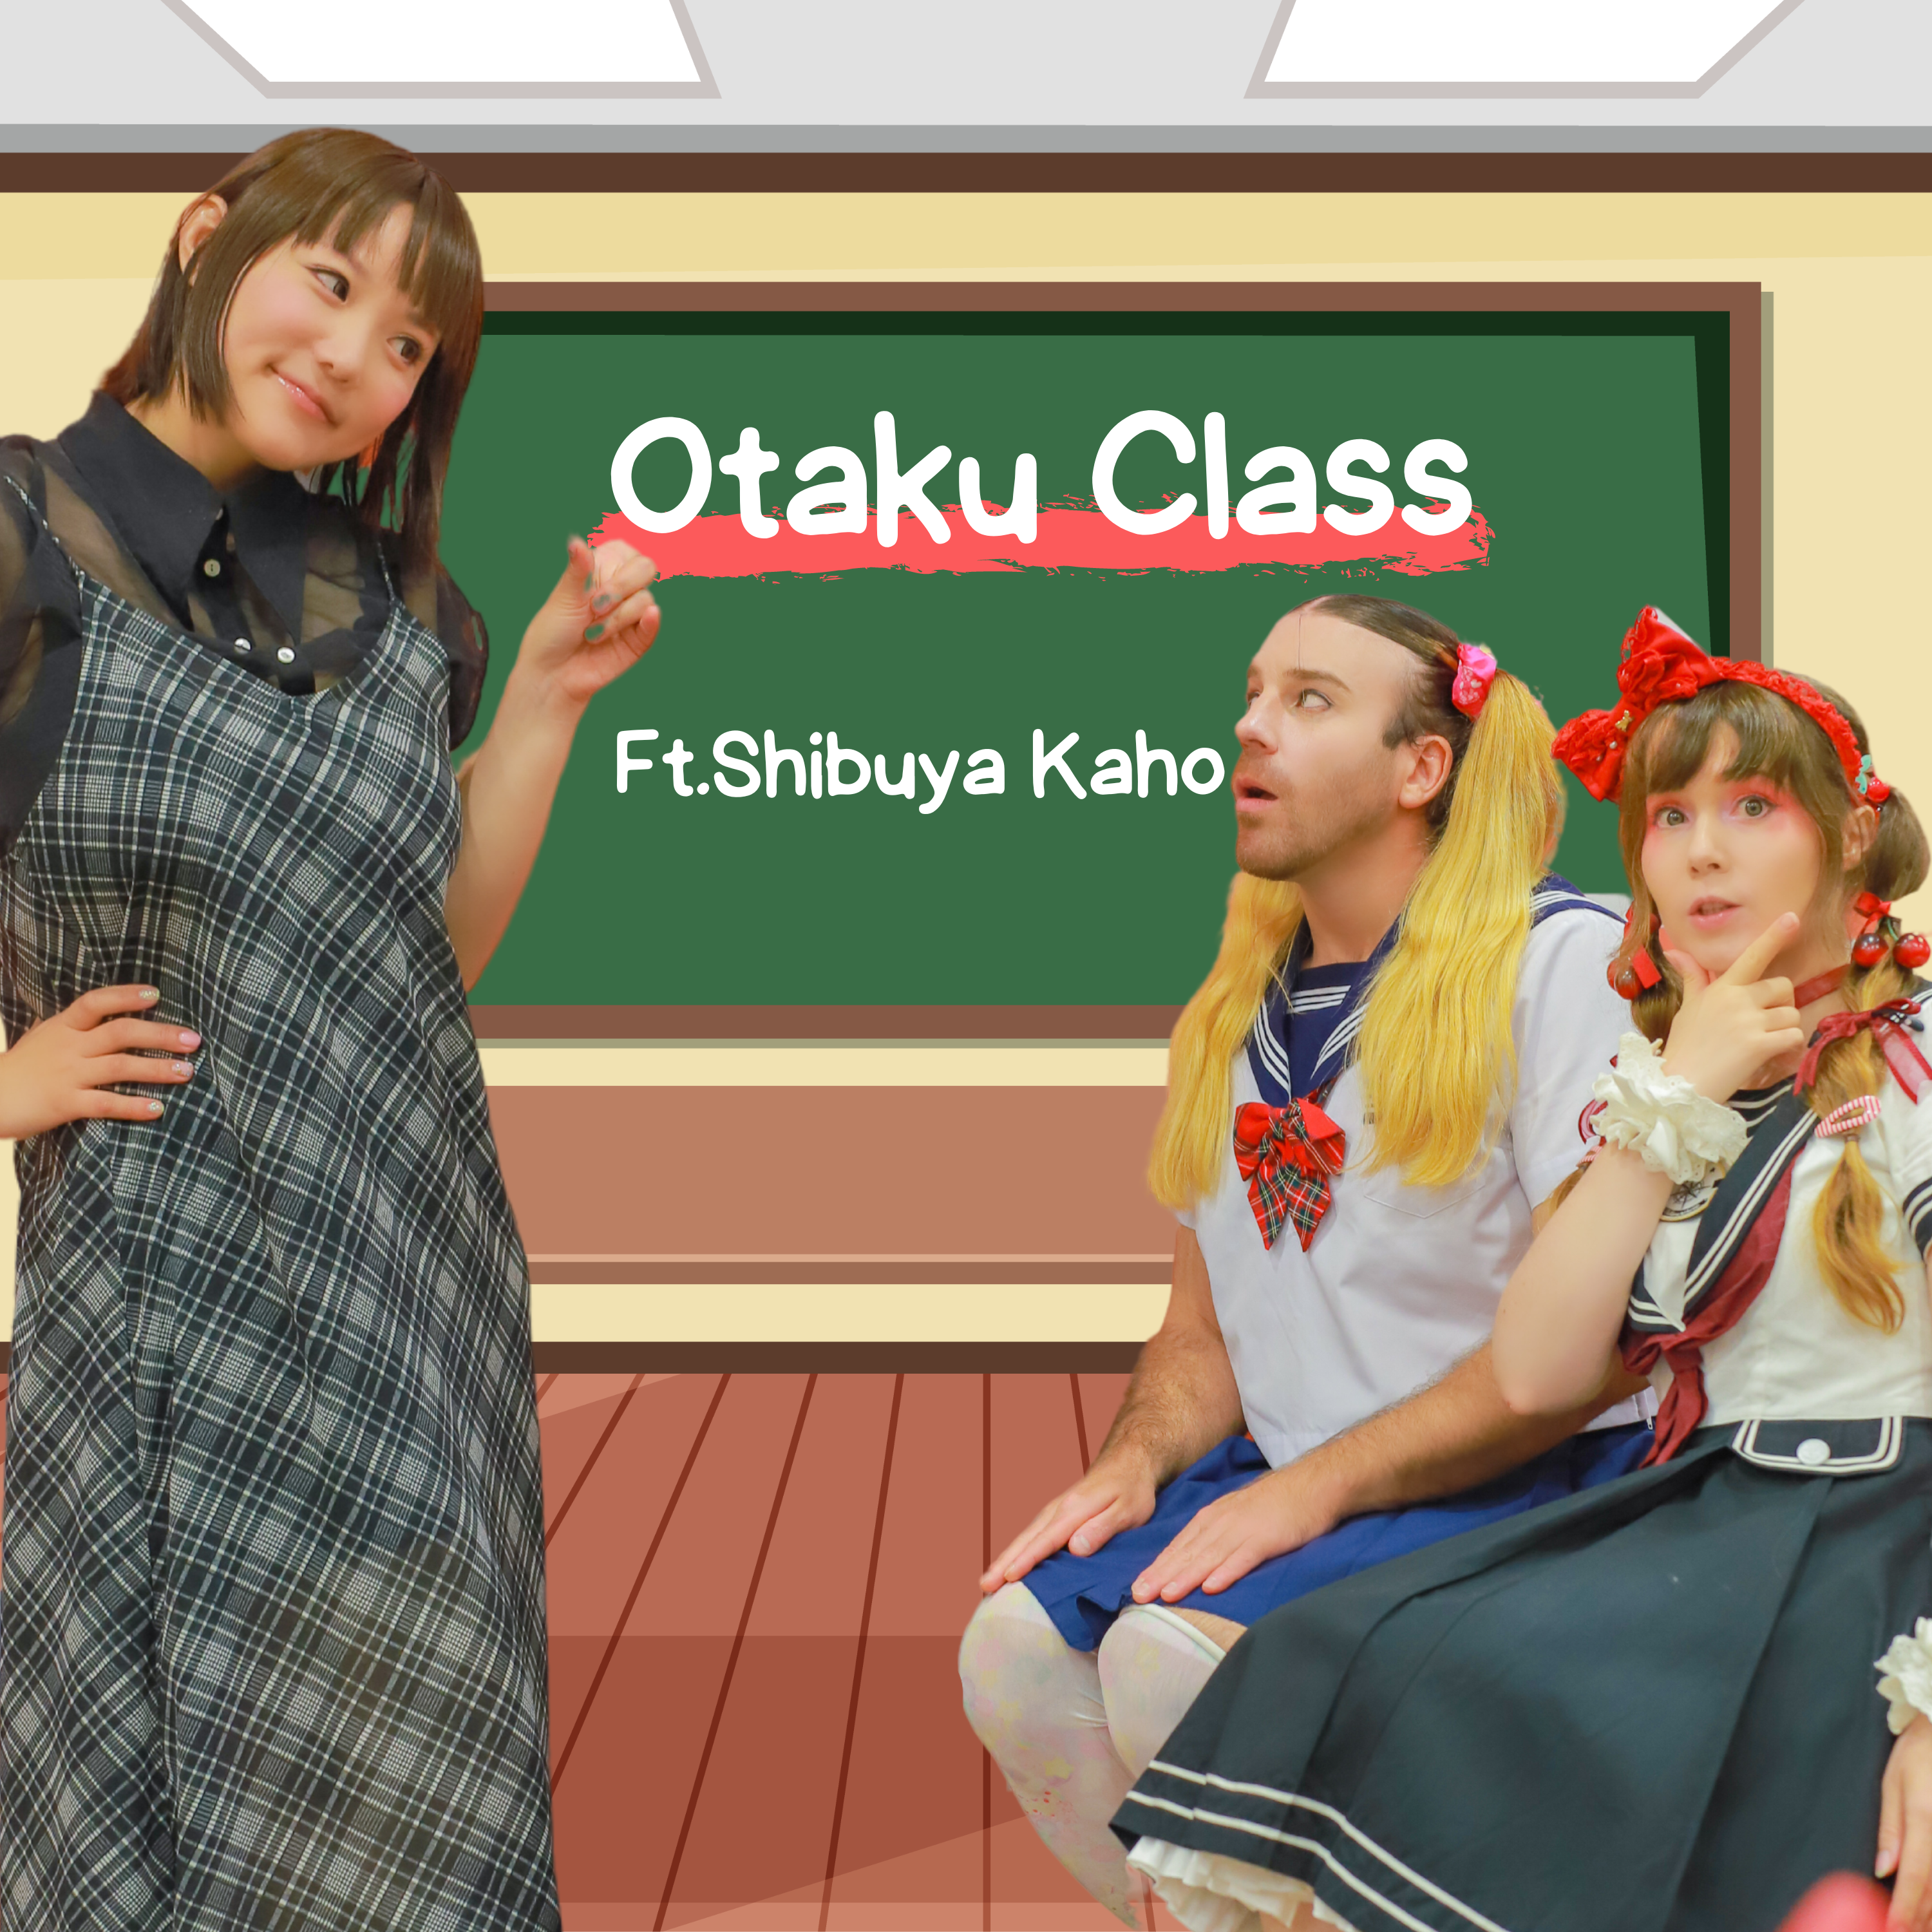 #20- Anime Otaku Class with Shibuya Kaho‼